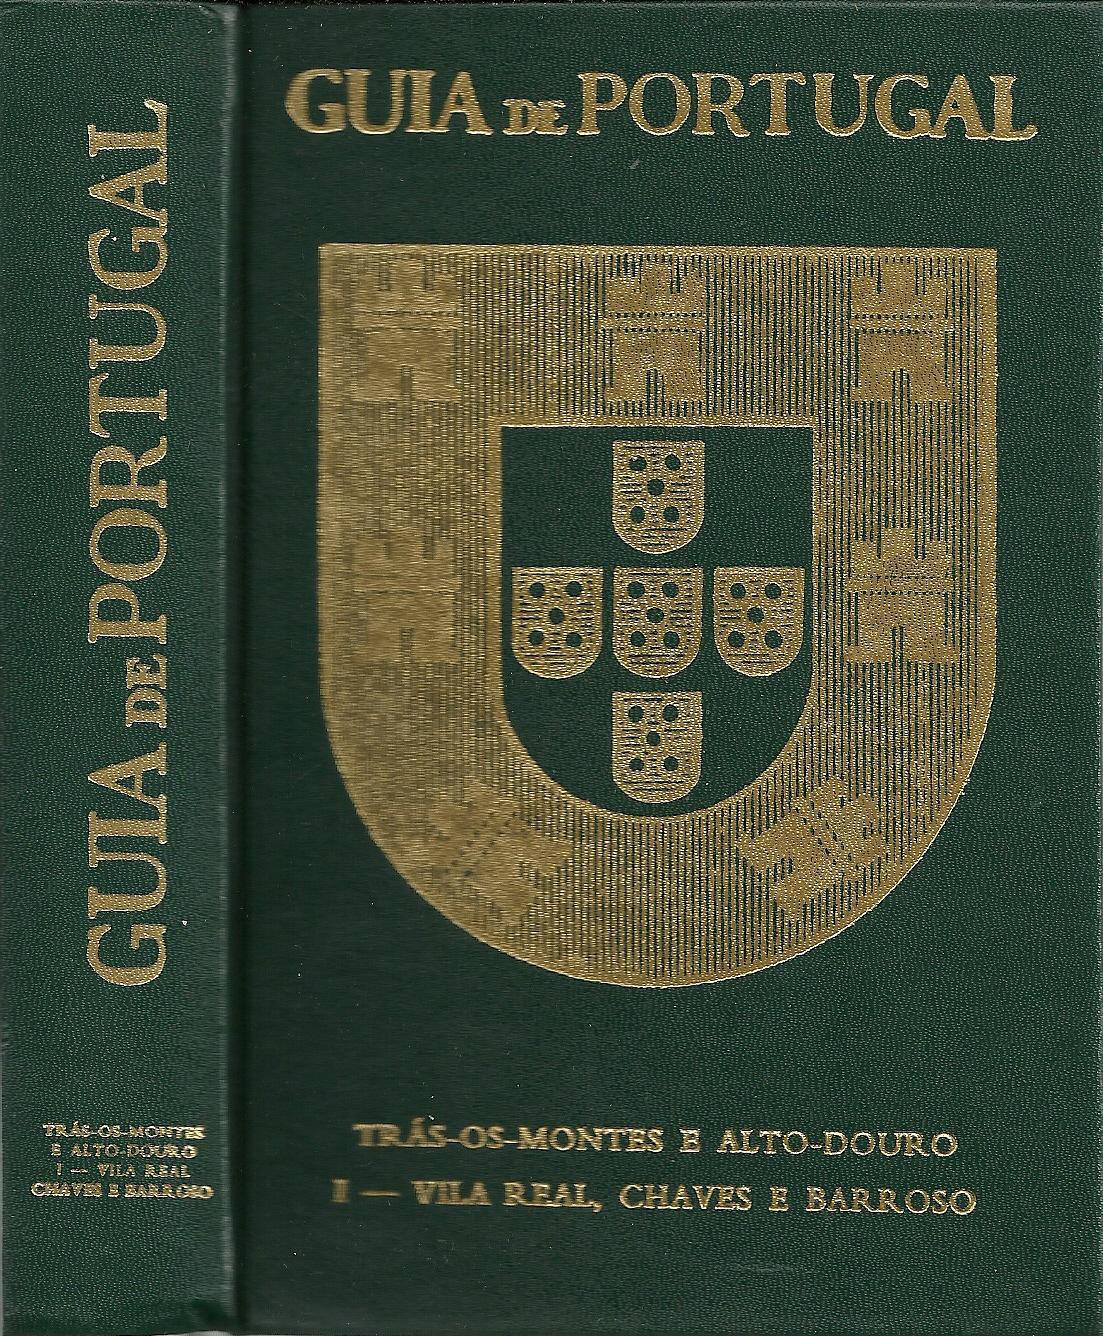 GUIA DE PORTUGAL TRÁS-OS-MONTES E ALTO-DOURO. I - VILA REAL, CHAVES E BARROSO.